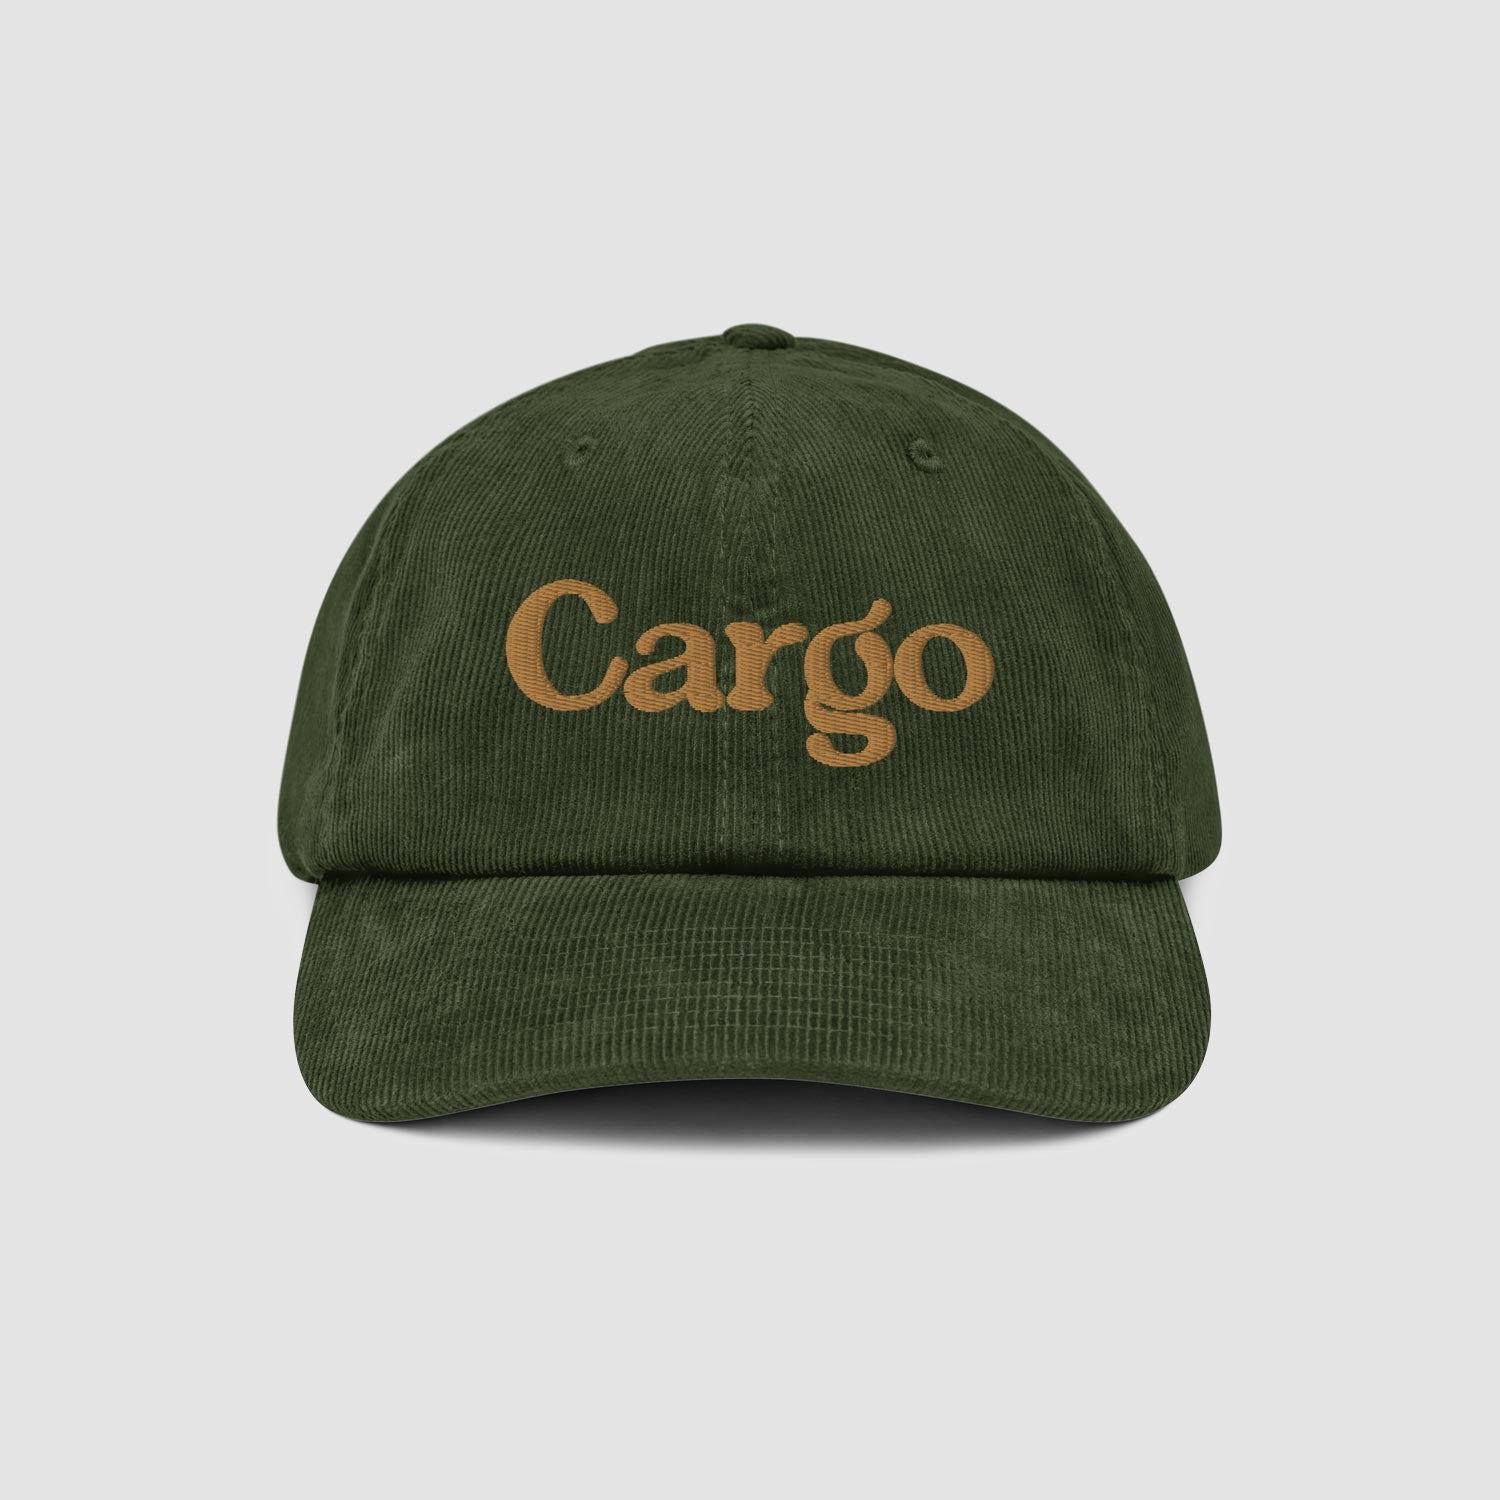 Cargo Brand Cap